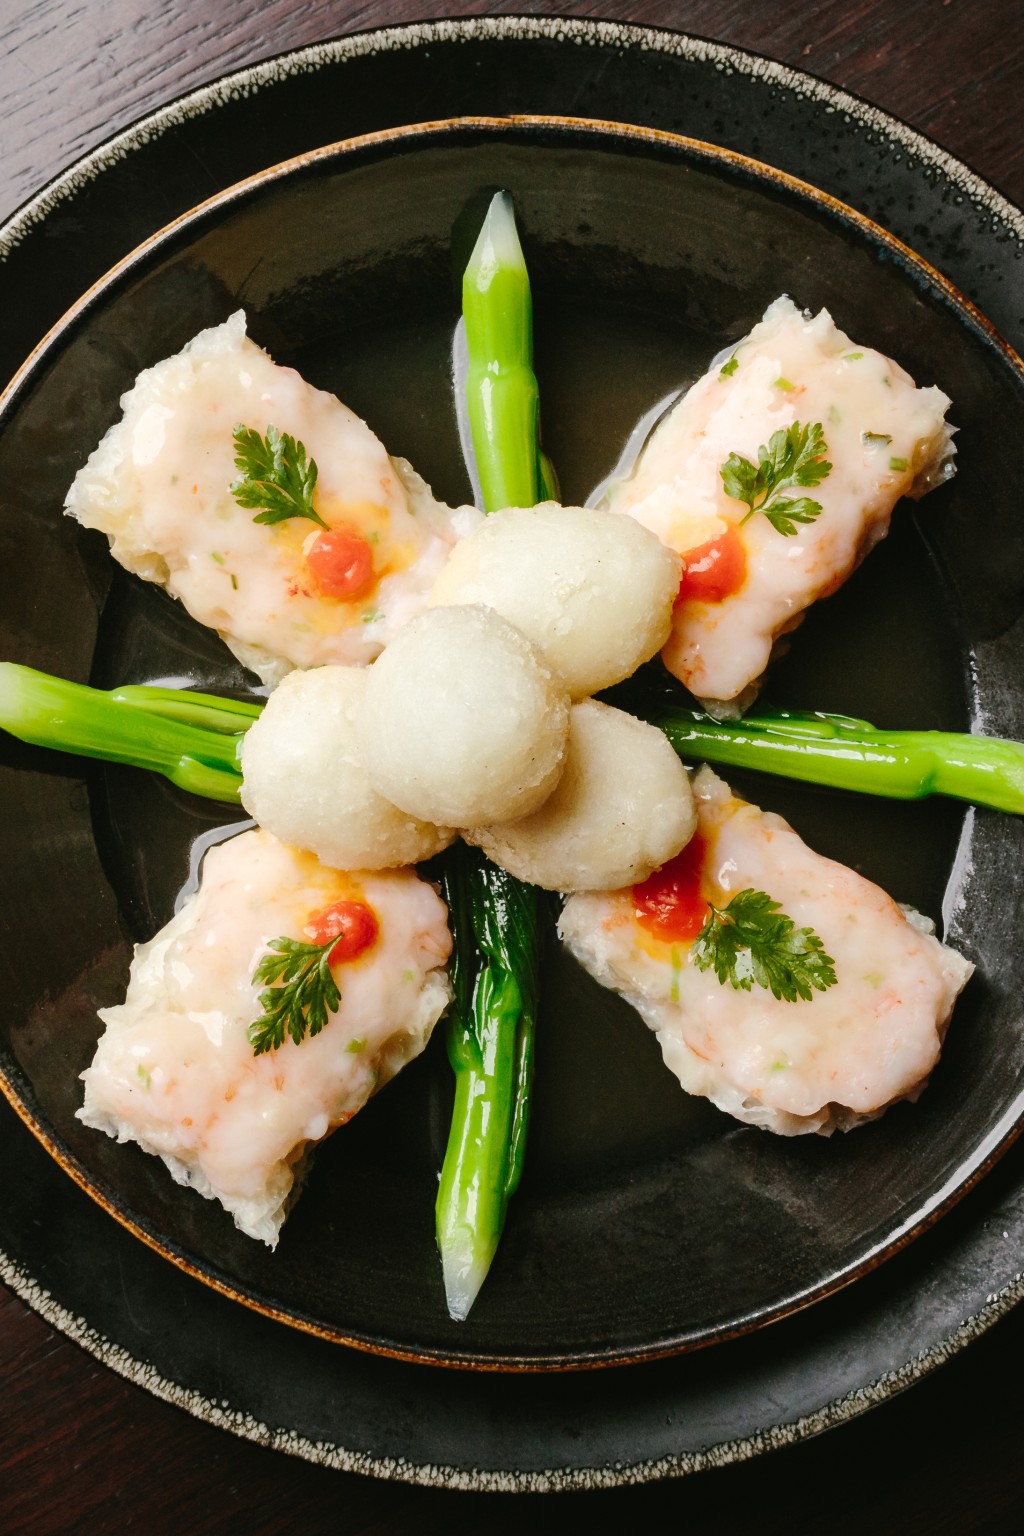 百花魚肚縐紗鴿蛋  $680 屬滿漢全席菜式，在魚肚中釀入蝦膠，是一道精緻手工菜。